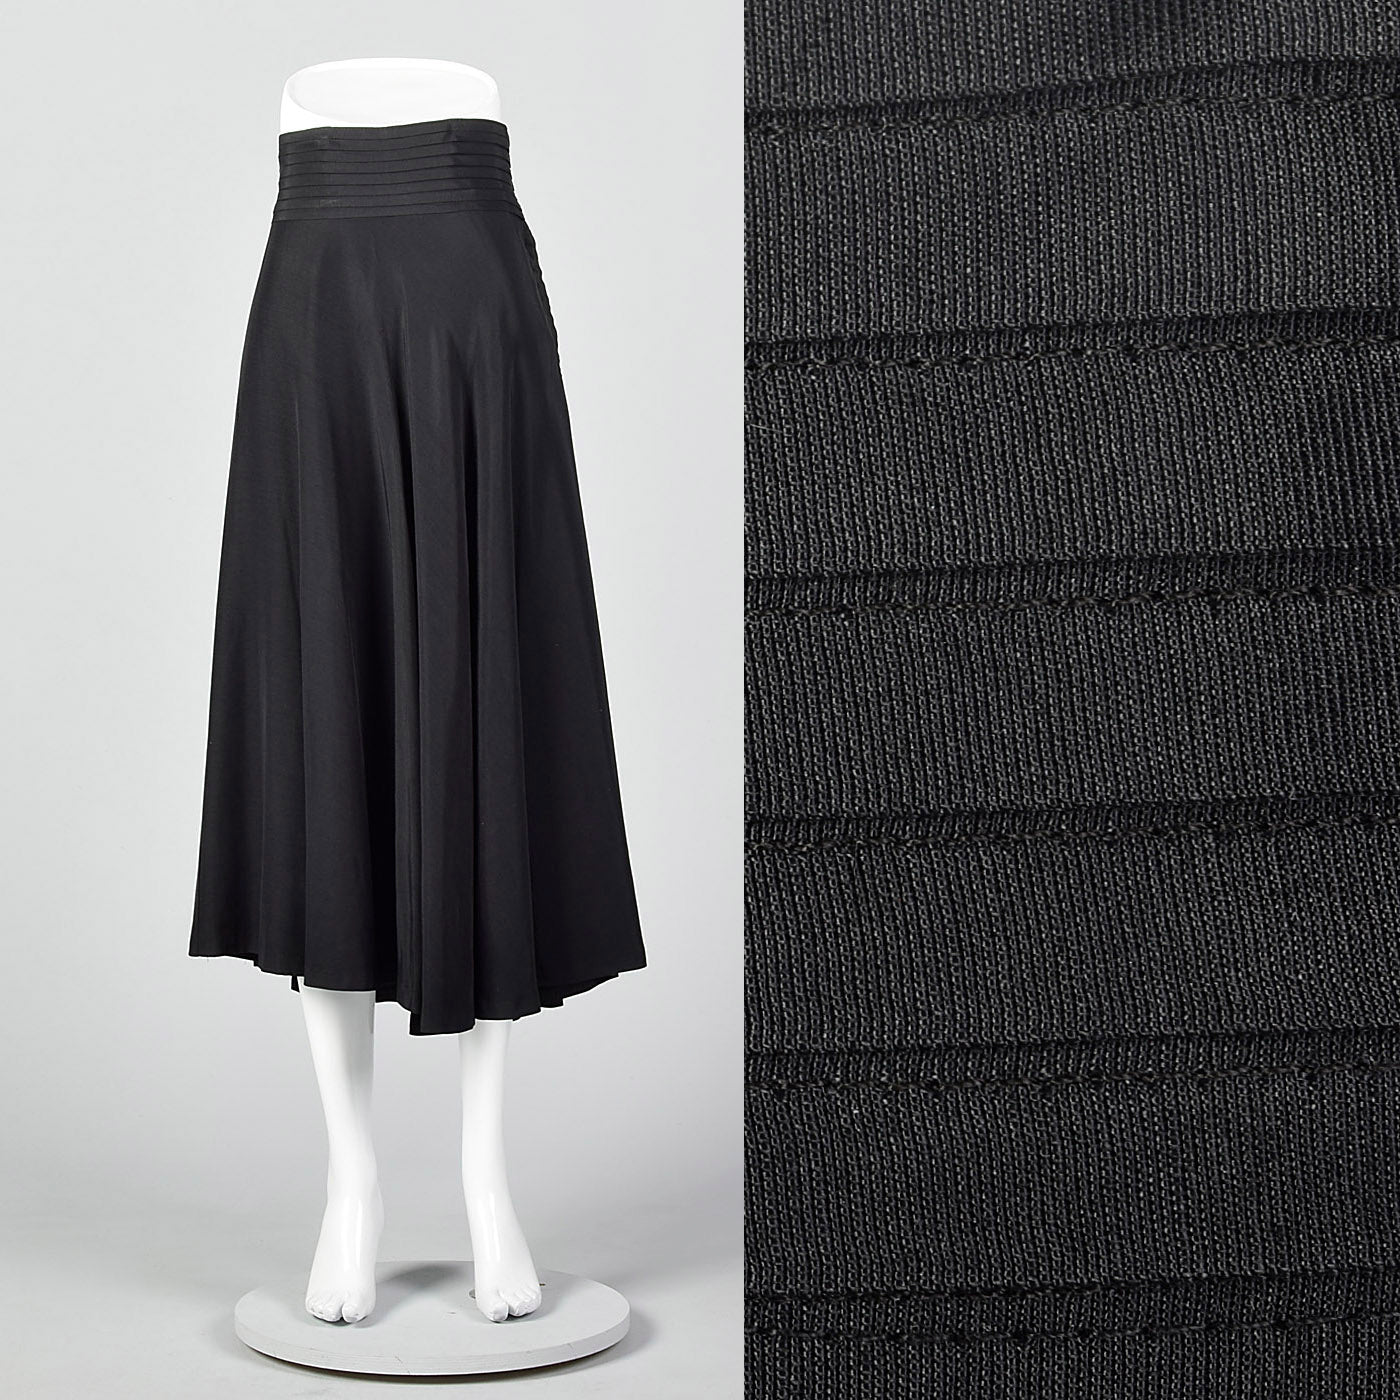 1950s Black Pleated Waistband Skirt